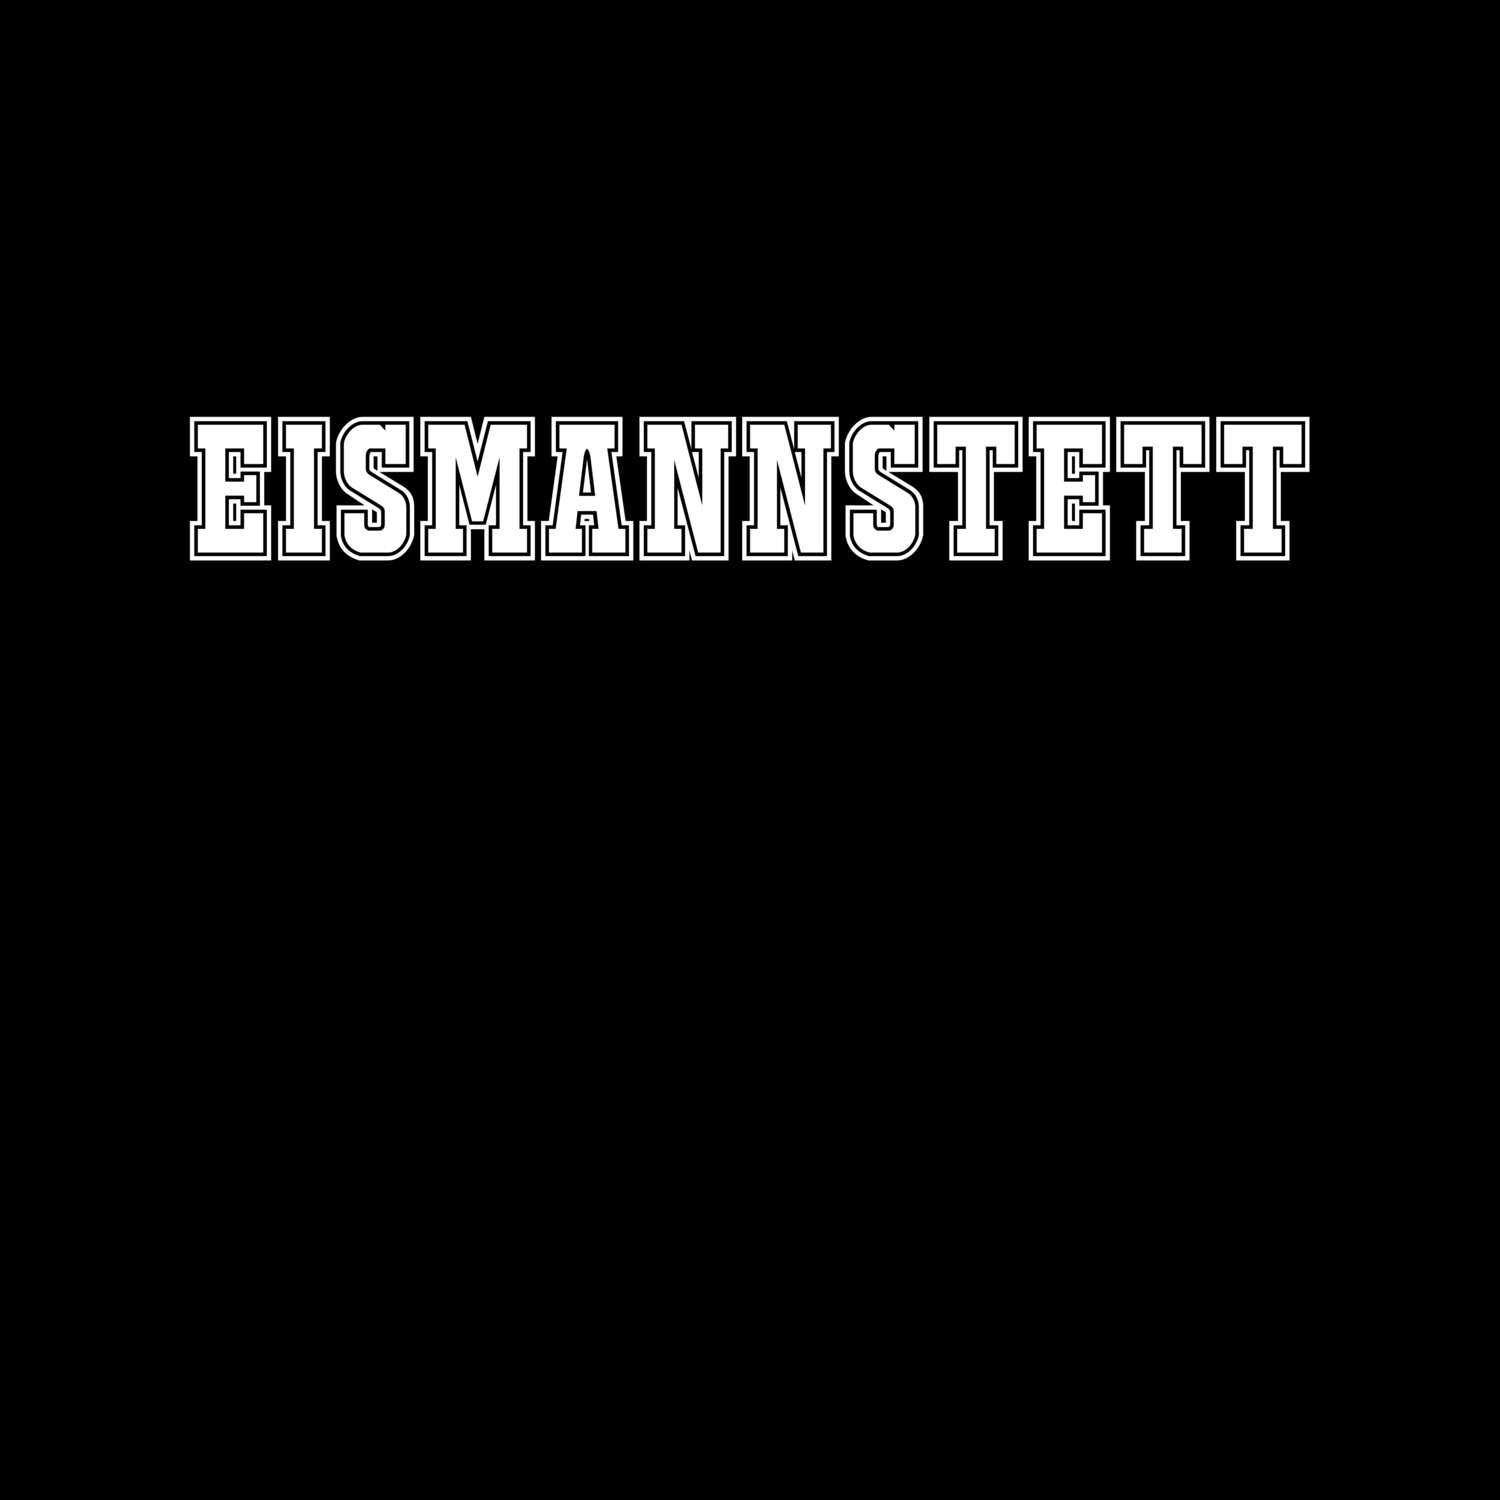 Eismannstett T-Shirt »Classic«